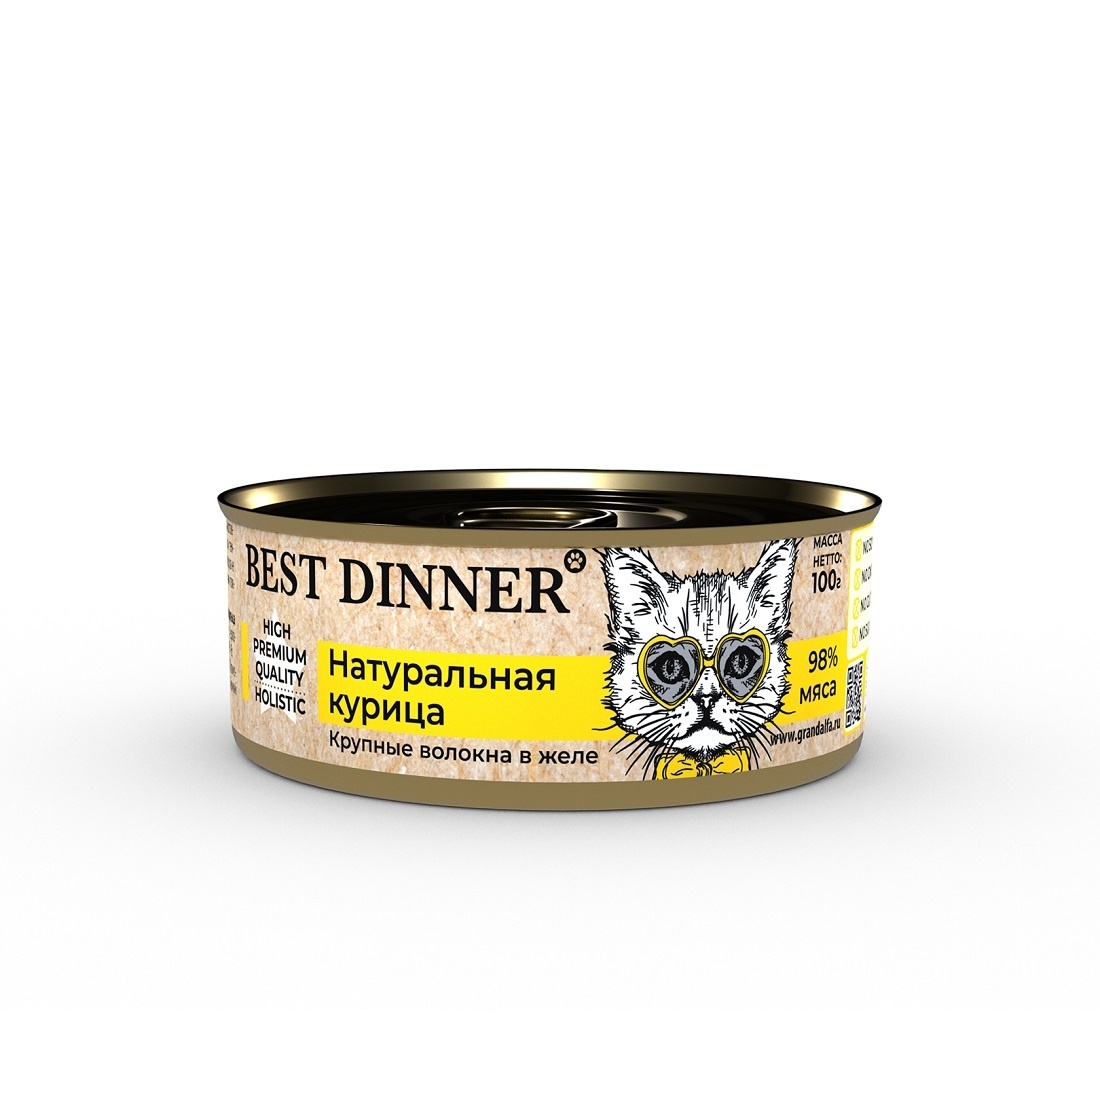 Best Dinner Best Dinner консервы для кошек в желе Натуральная курица (100 г)